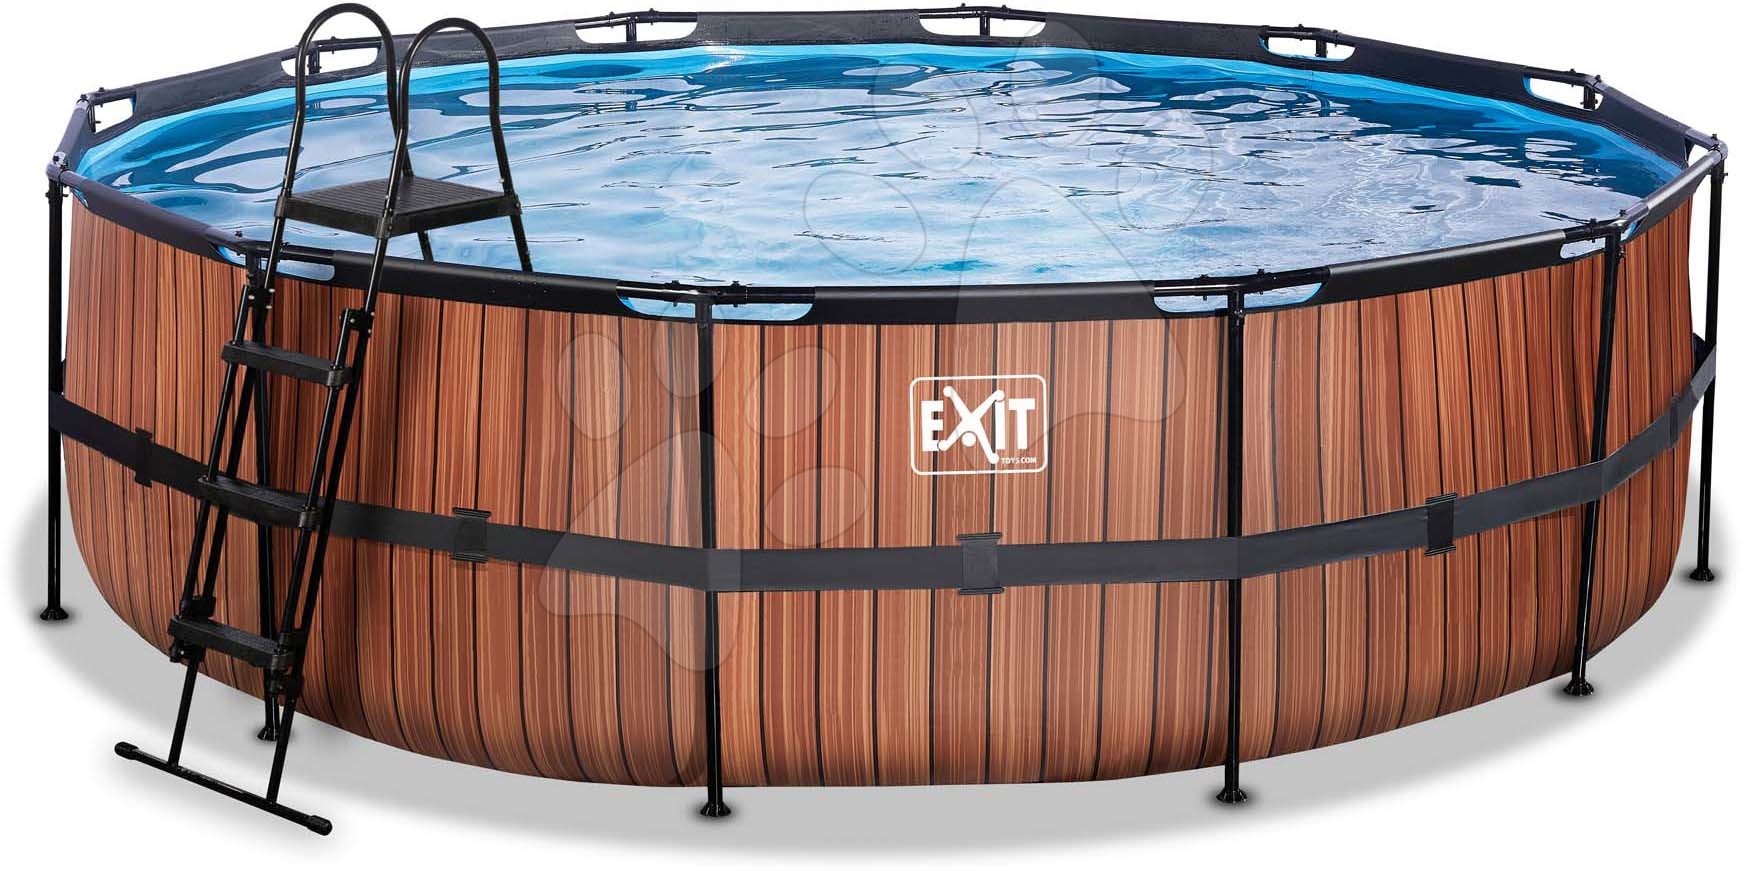 Medence vízforgatóval Wood pool Exit Toys kerek acél medencekeret 488*122 cm barna 6 évtől